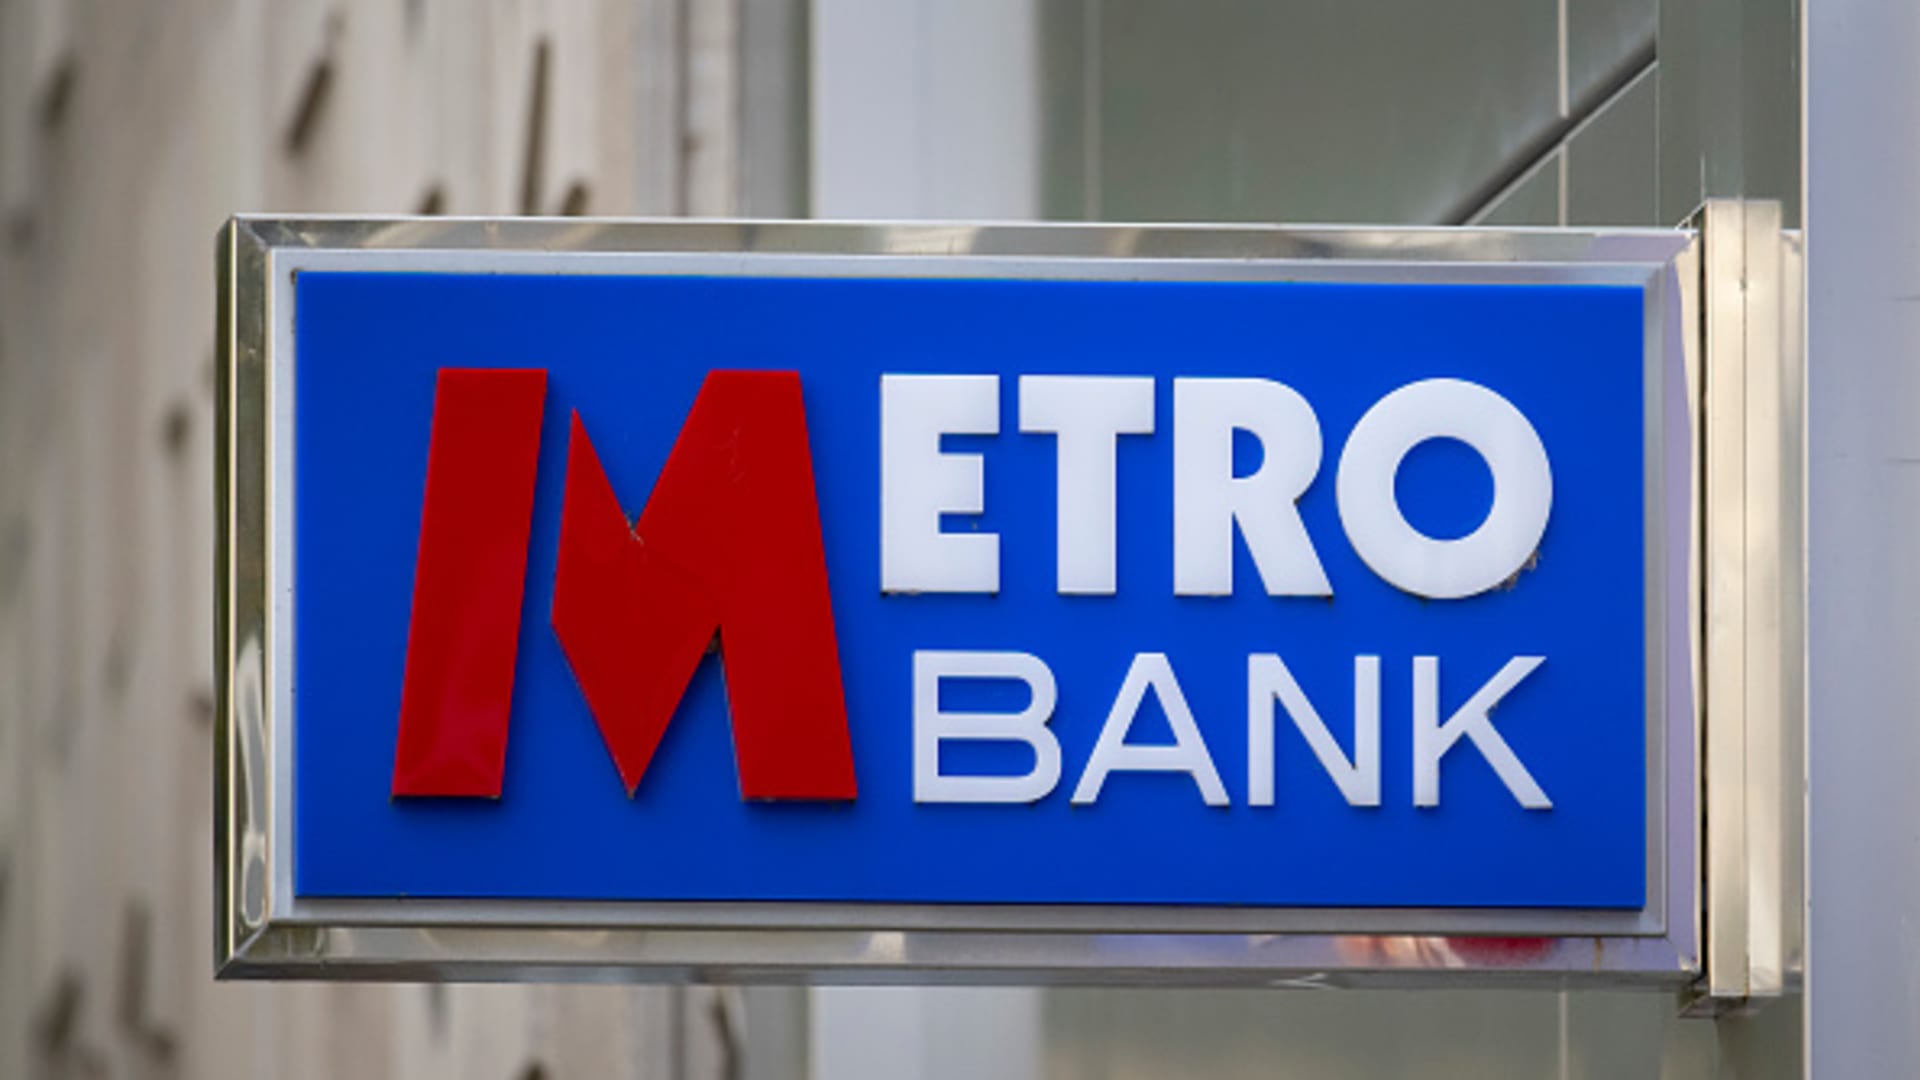 Aandelen UK Metro Bank meerdere keren opgeschort na een daling van meer dan 25%